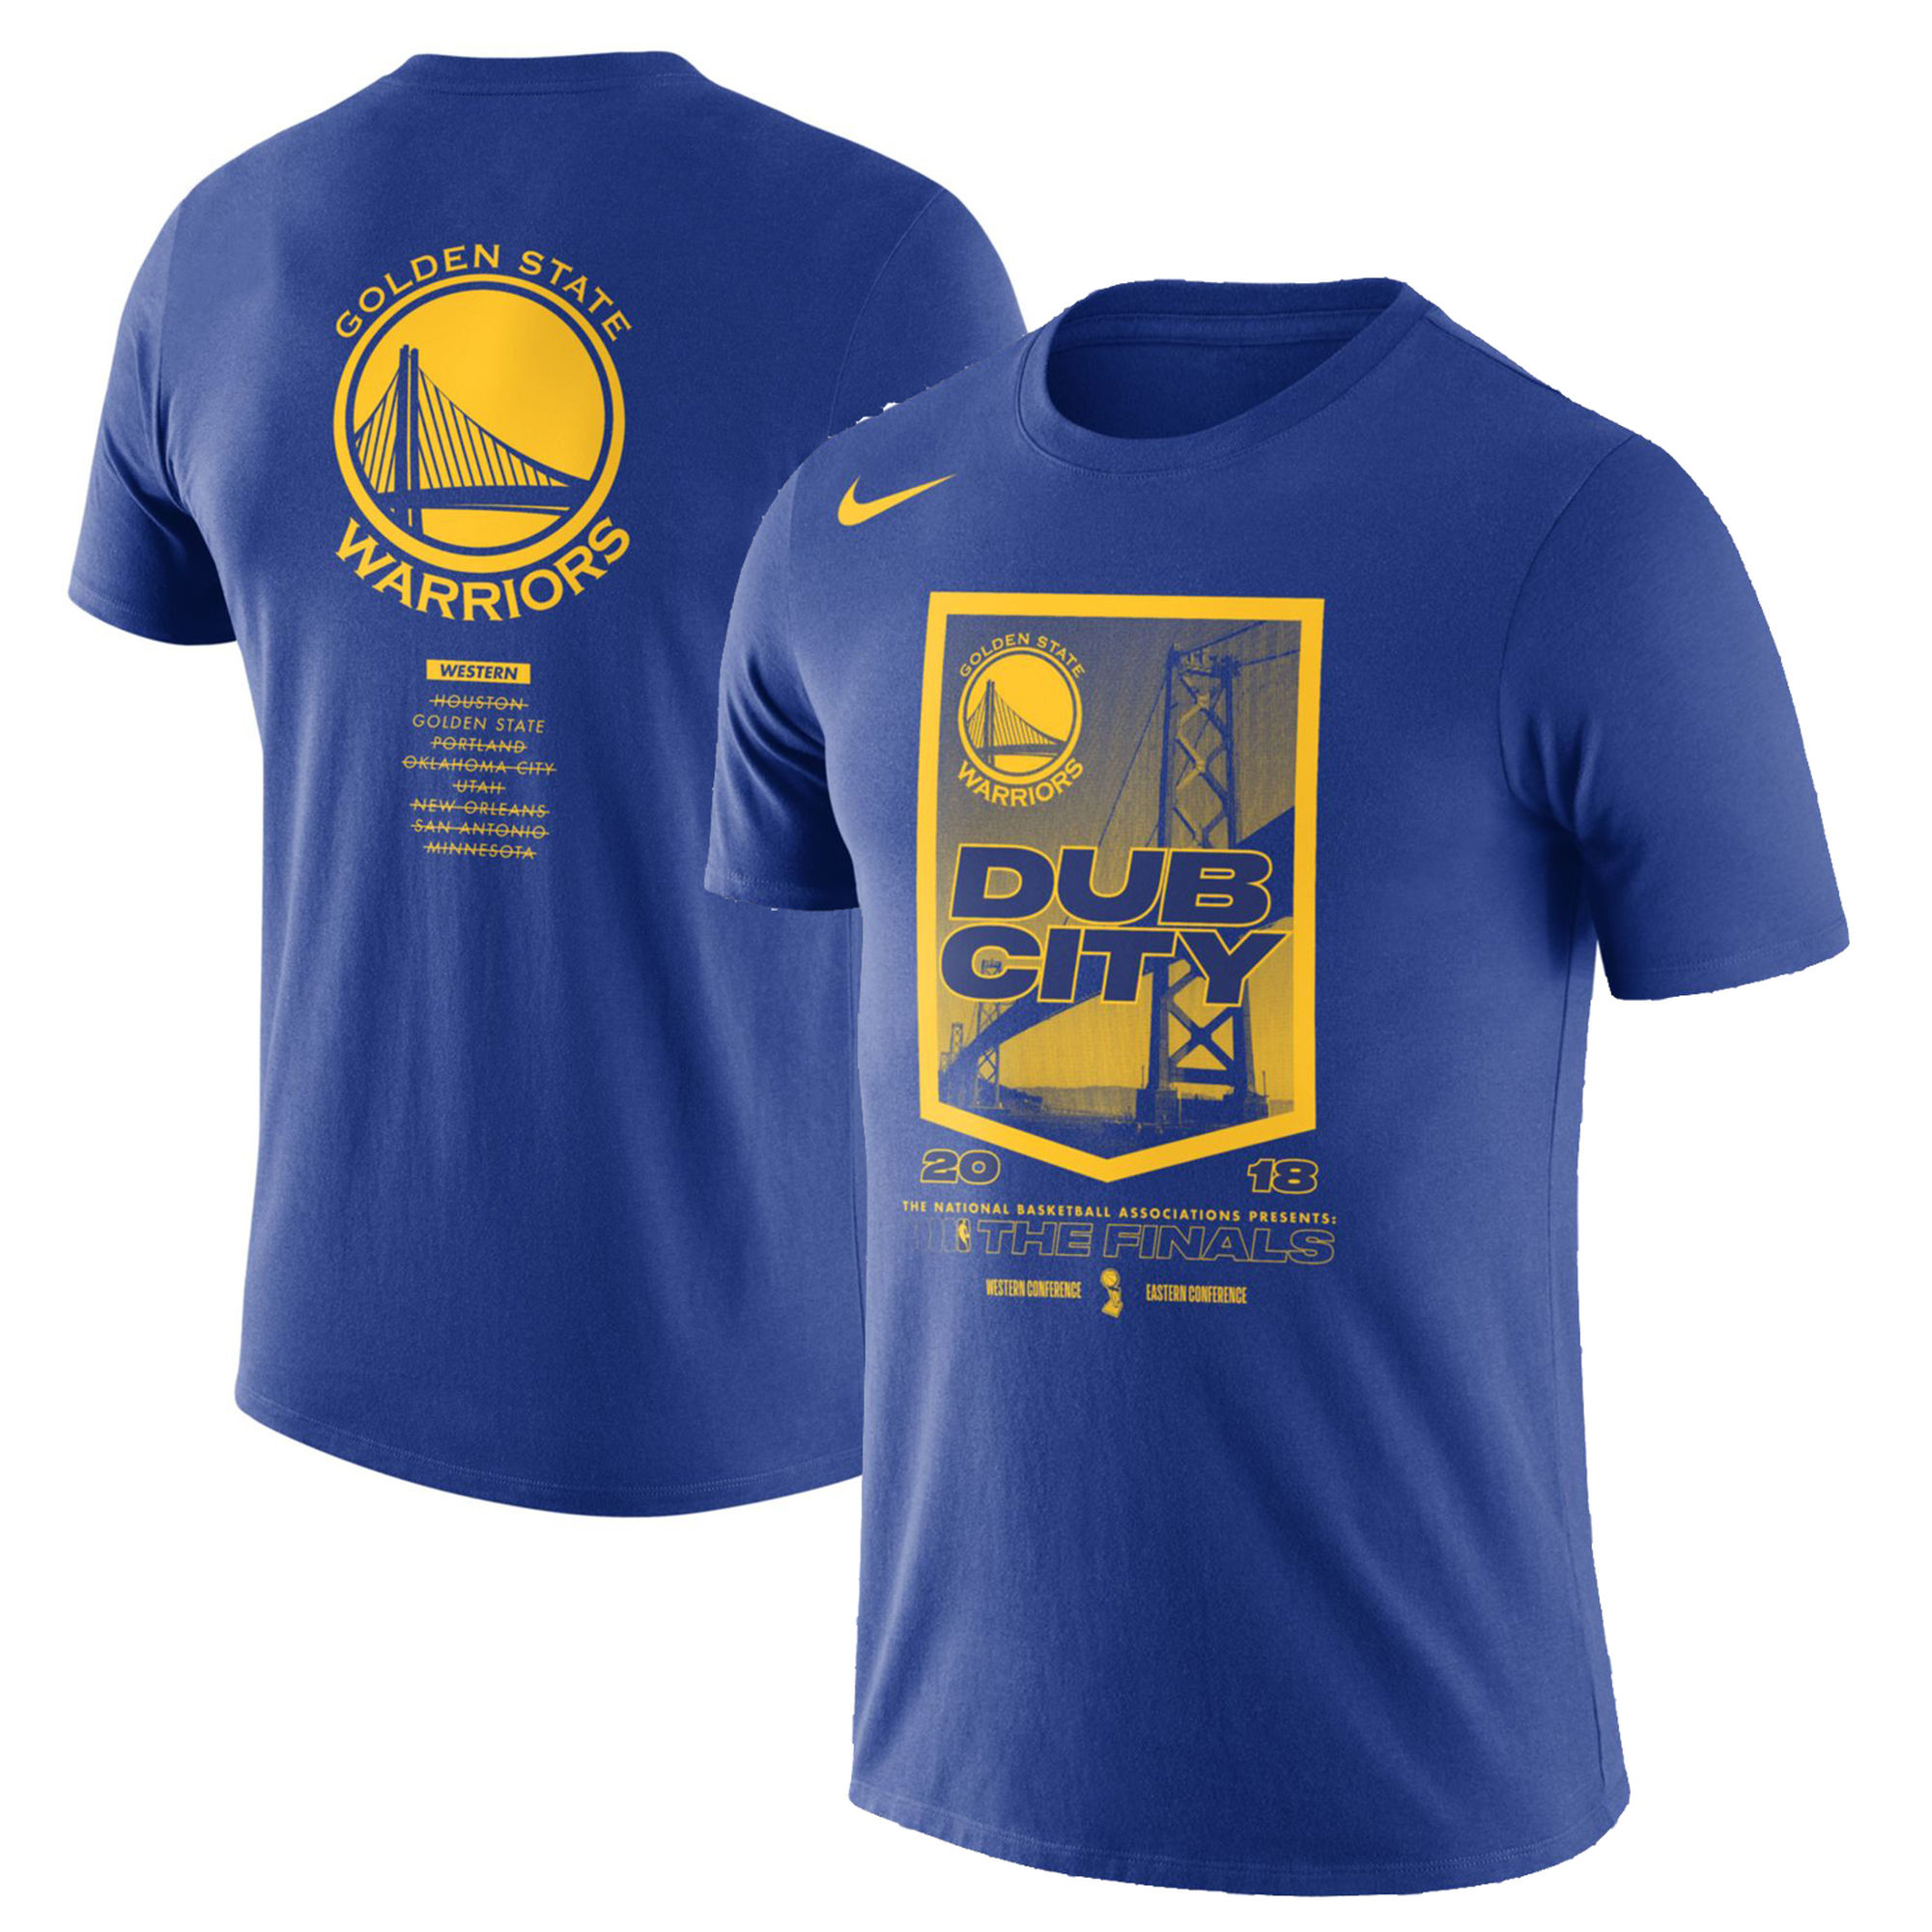 Golden State Warriors Nike 2018 NBA Finals Bound City DNA Cotton Performance T-Shirt¨CBlue